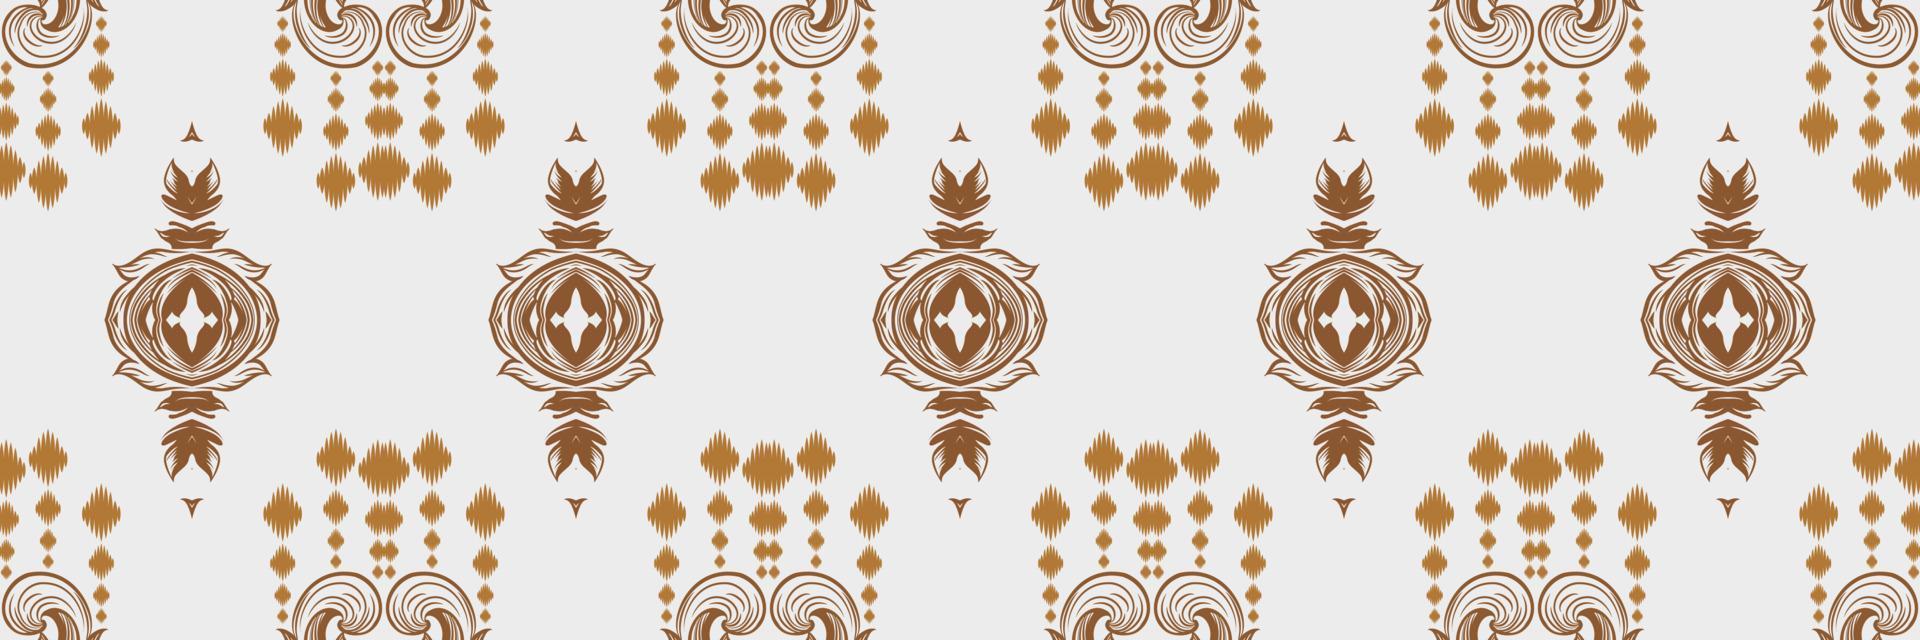 ikat gräns stam- afrikansk sömlös mönster. etnisk geometrisk ikkat batik digital vektor textil- design för grafik tyg saree mughal borsta symbol strängar textur kurti kurtis kurtas